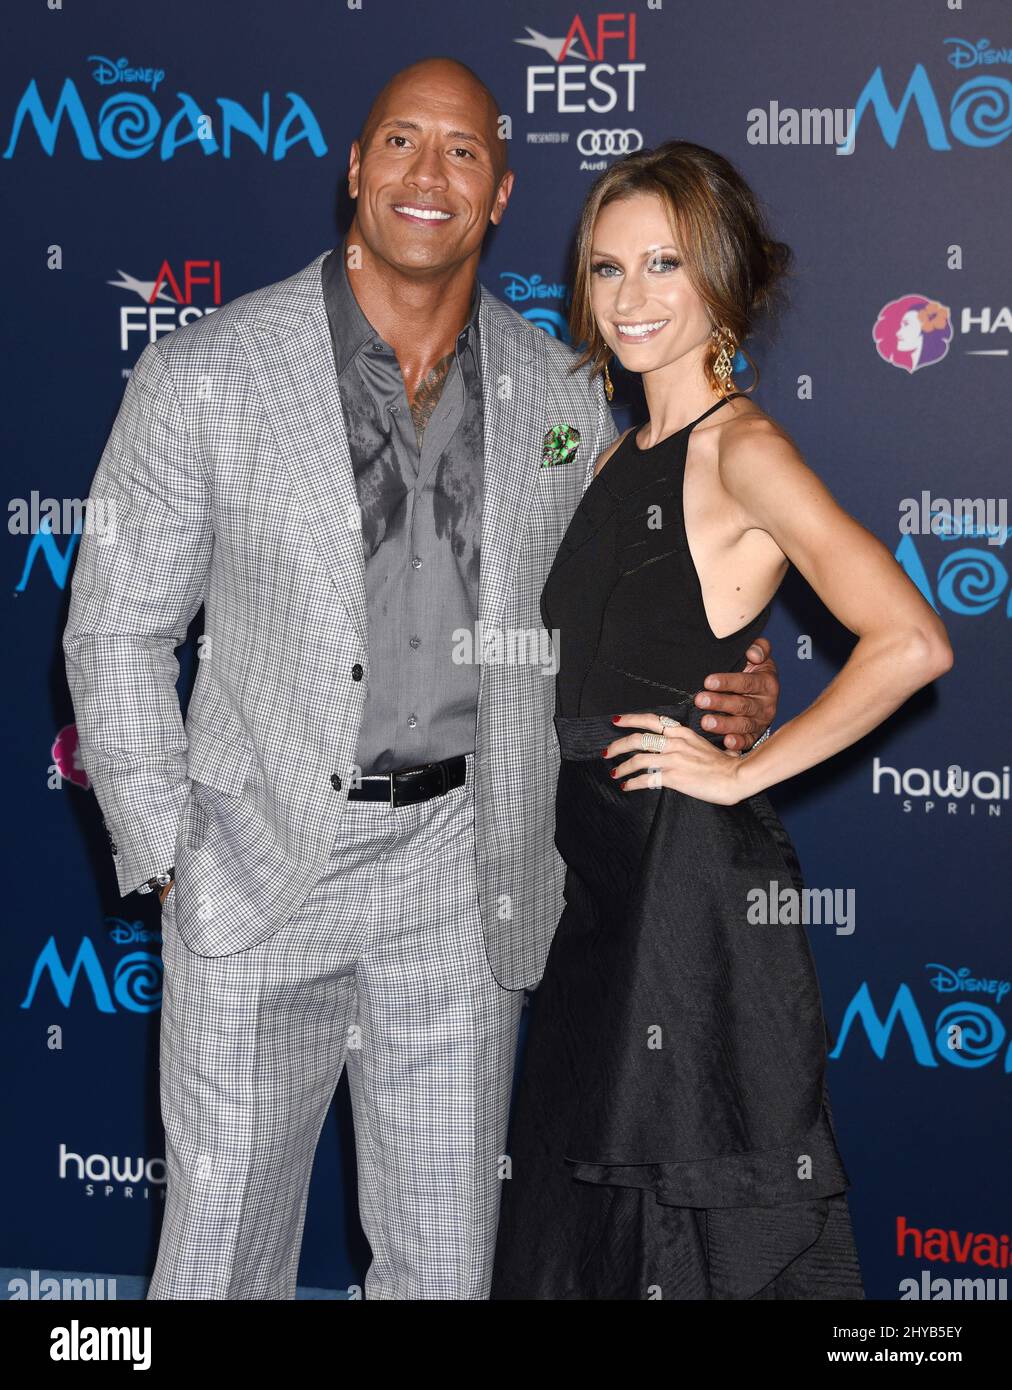 Dwayne Johnson und Lauren Hashian bei der Premiere von „Moana“ in Los Angeles Stockfoto